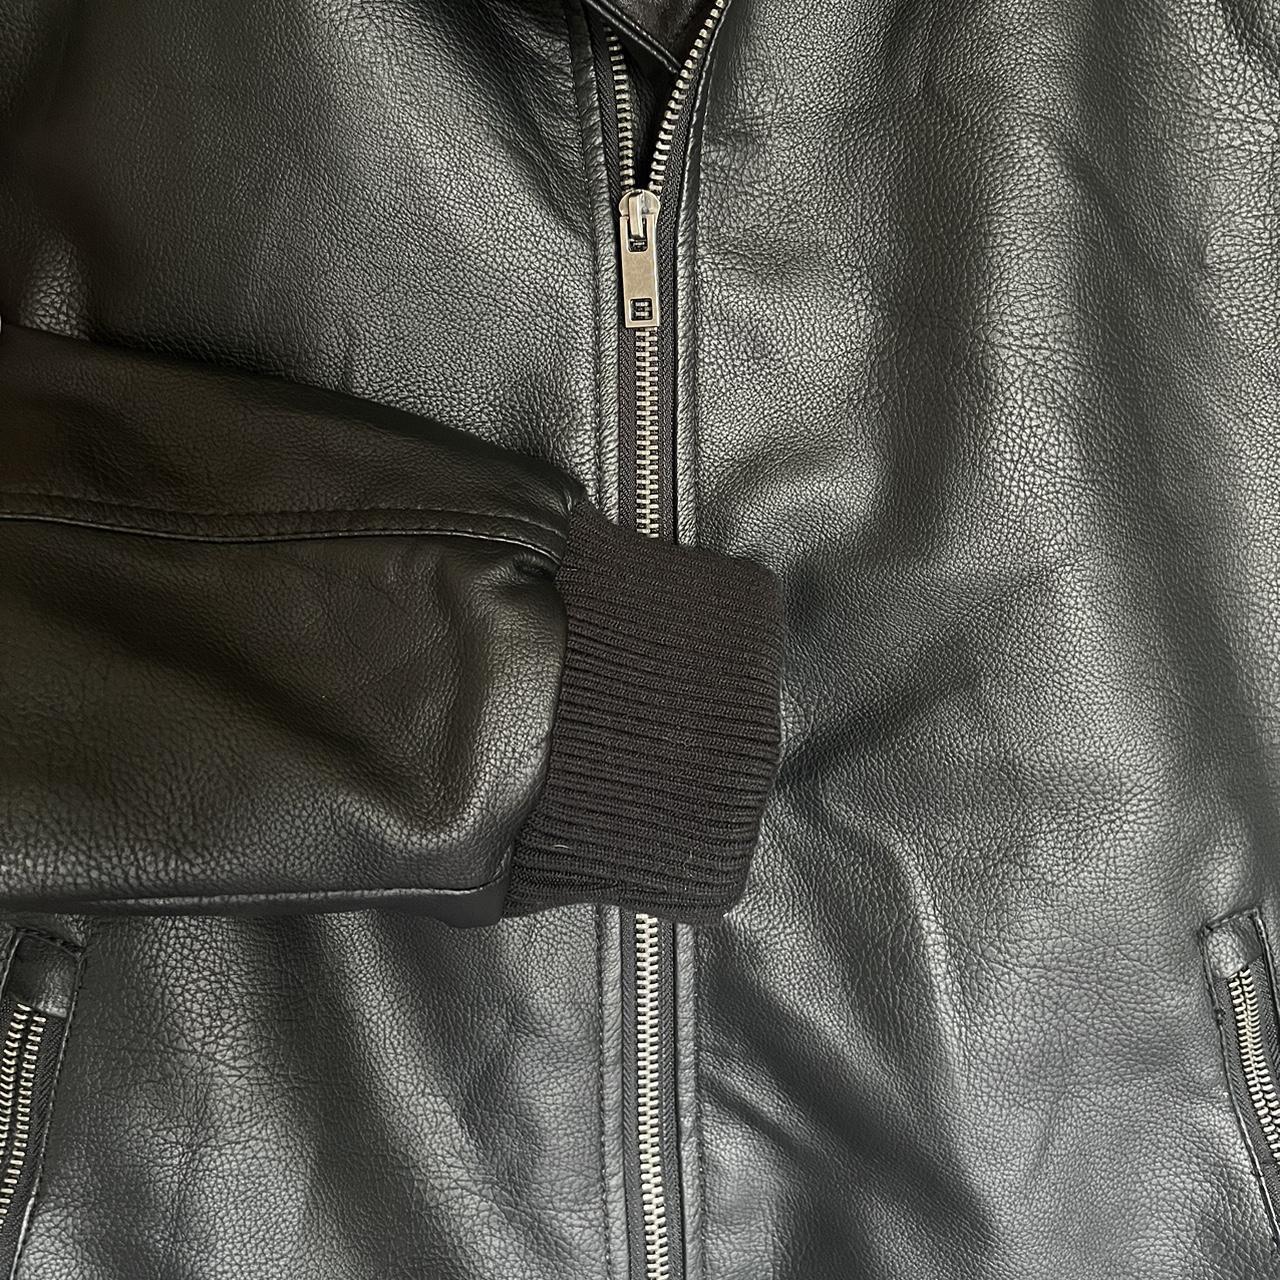 Unisex lined faux leather bomber jacket. Fleece... - Depop